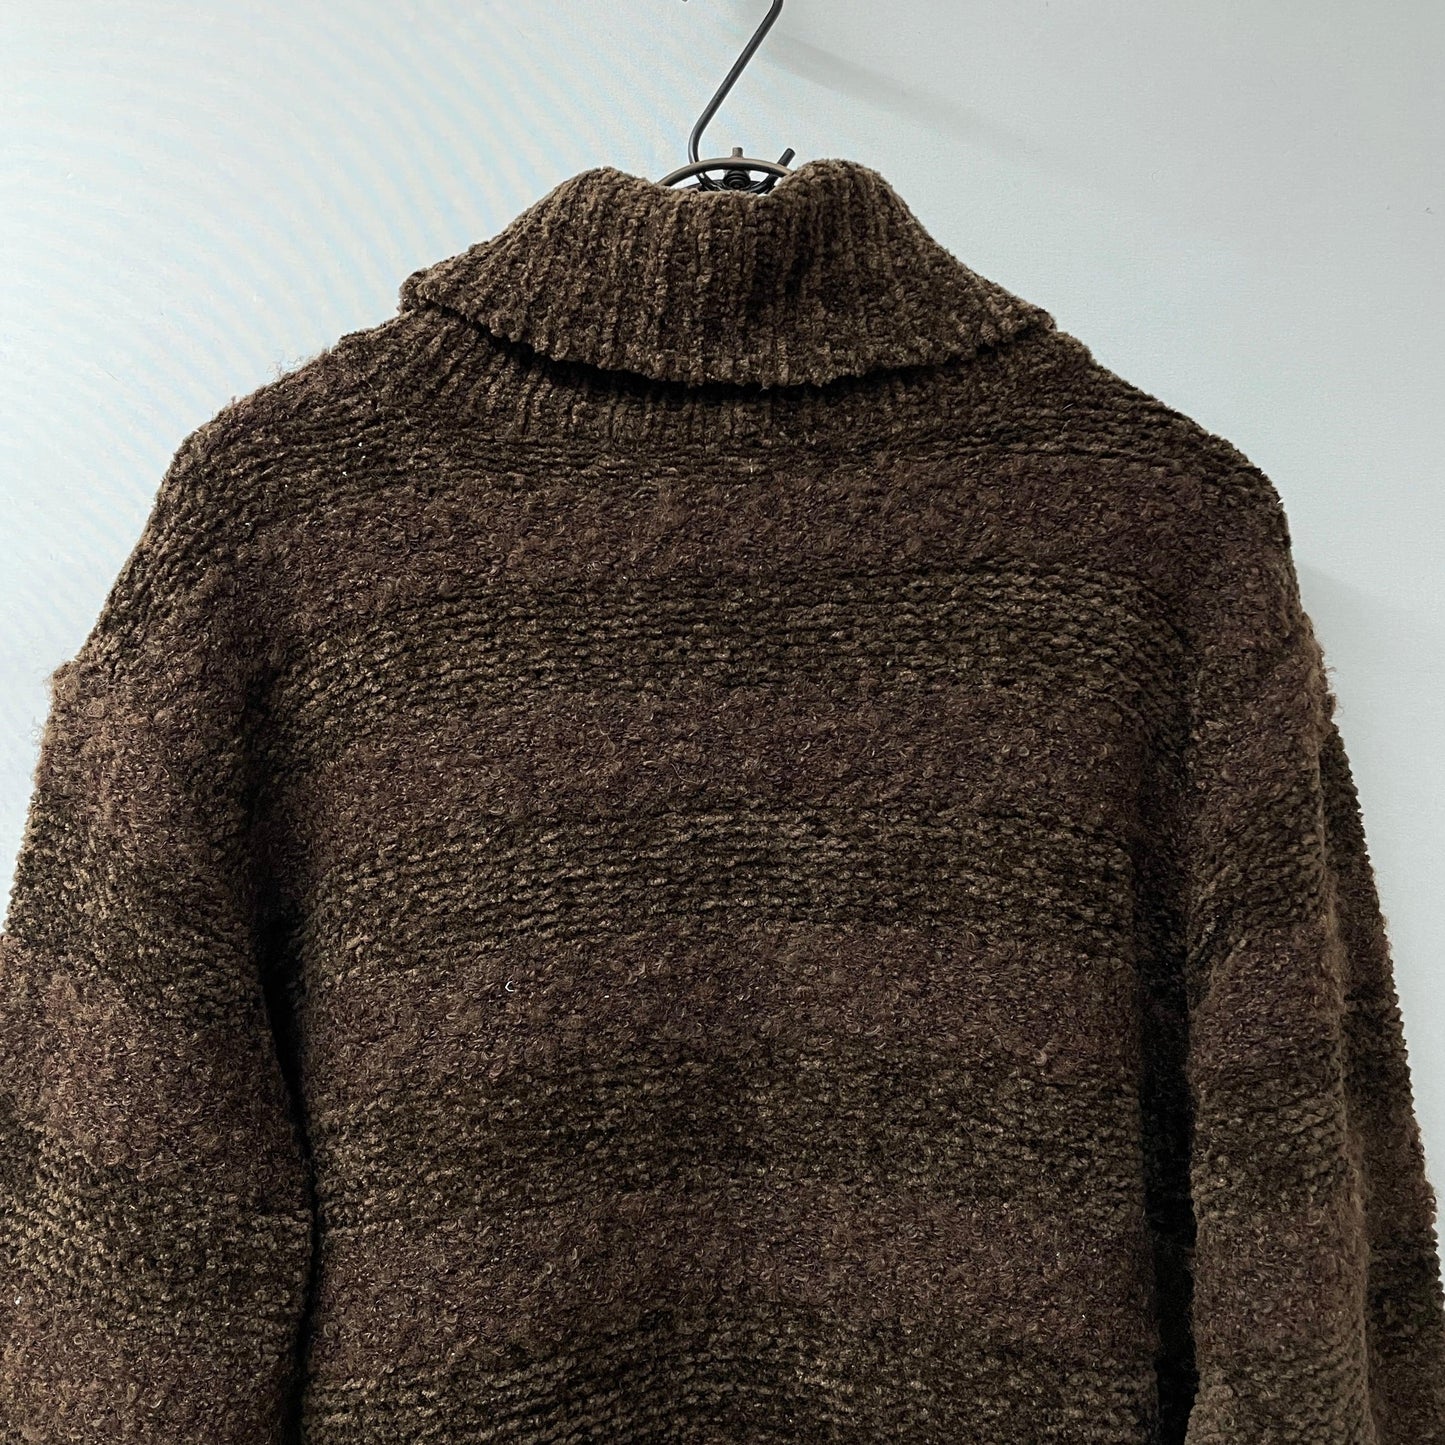 Pierre Cardin knit high neck knit